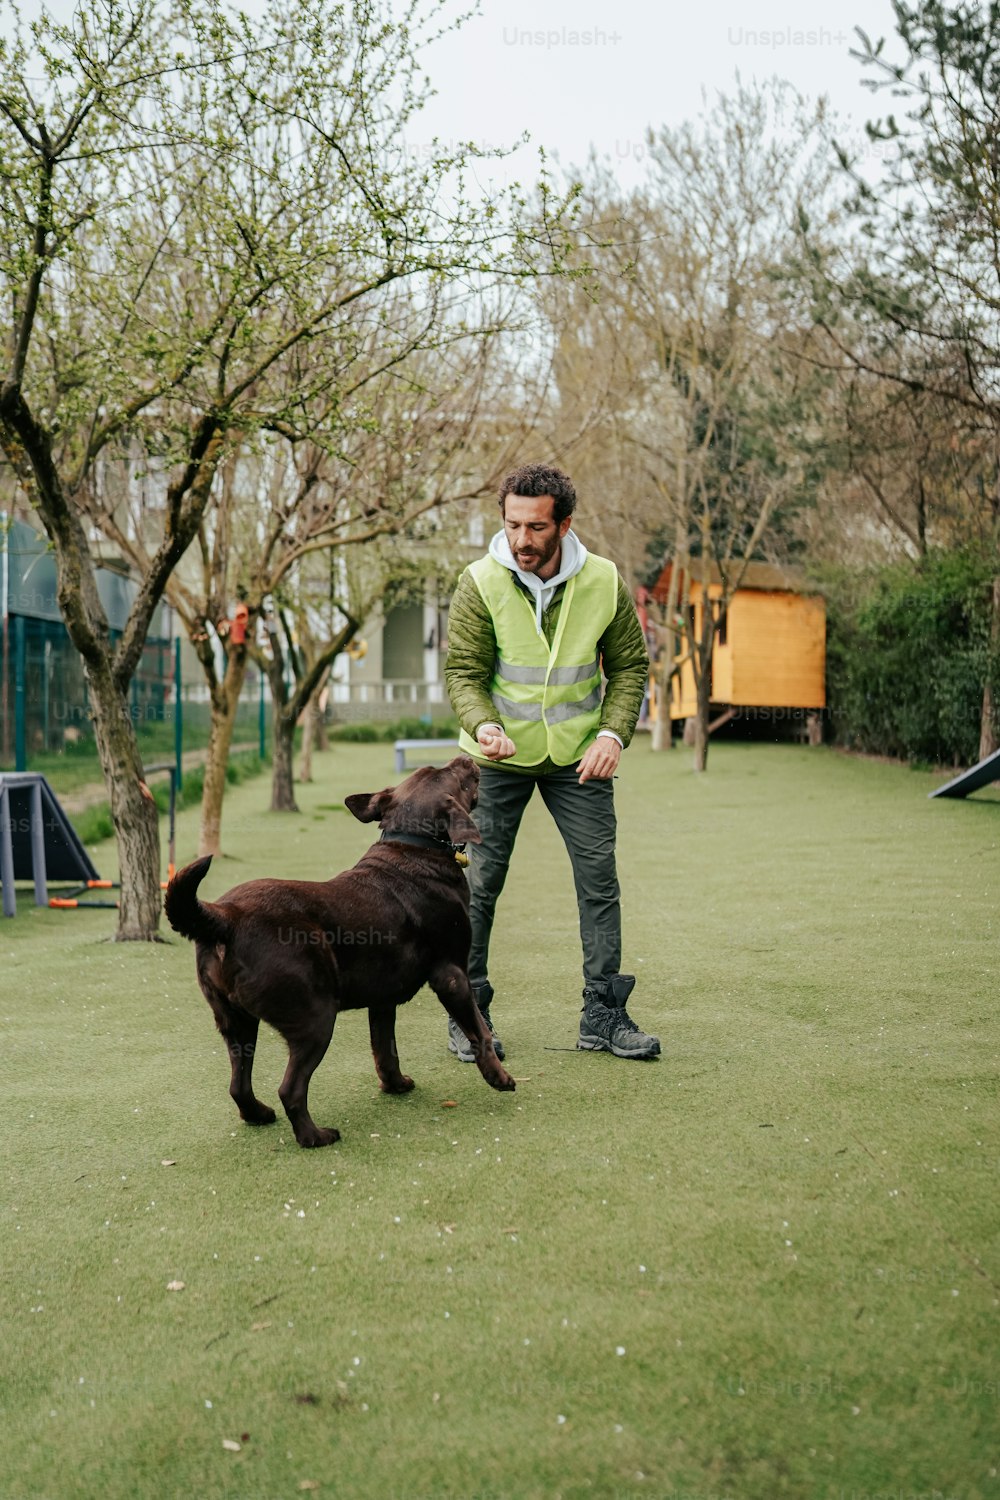 Un hombre jugando con un perro en un parque